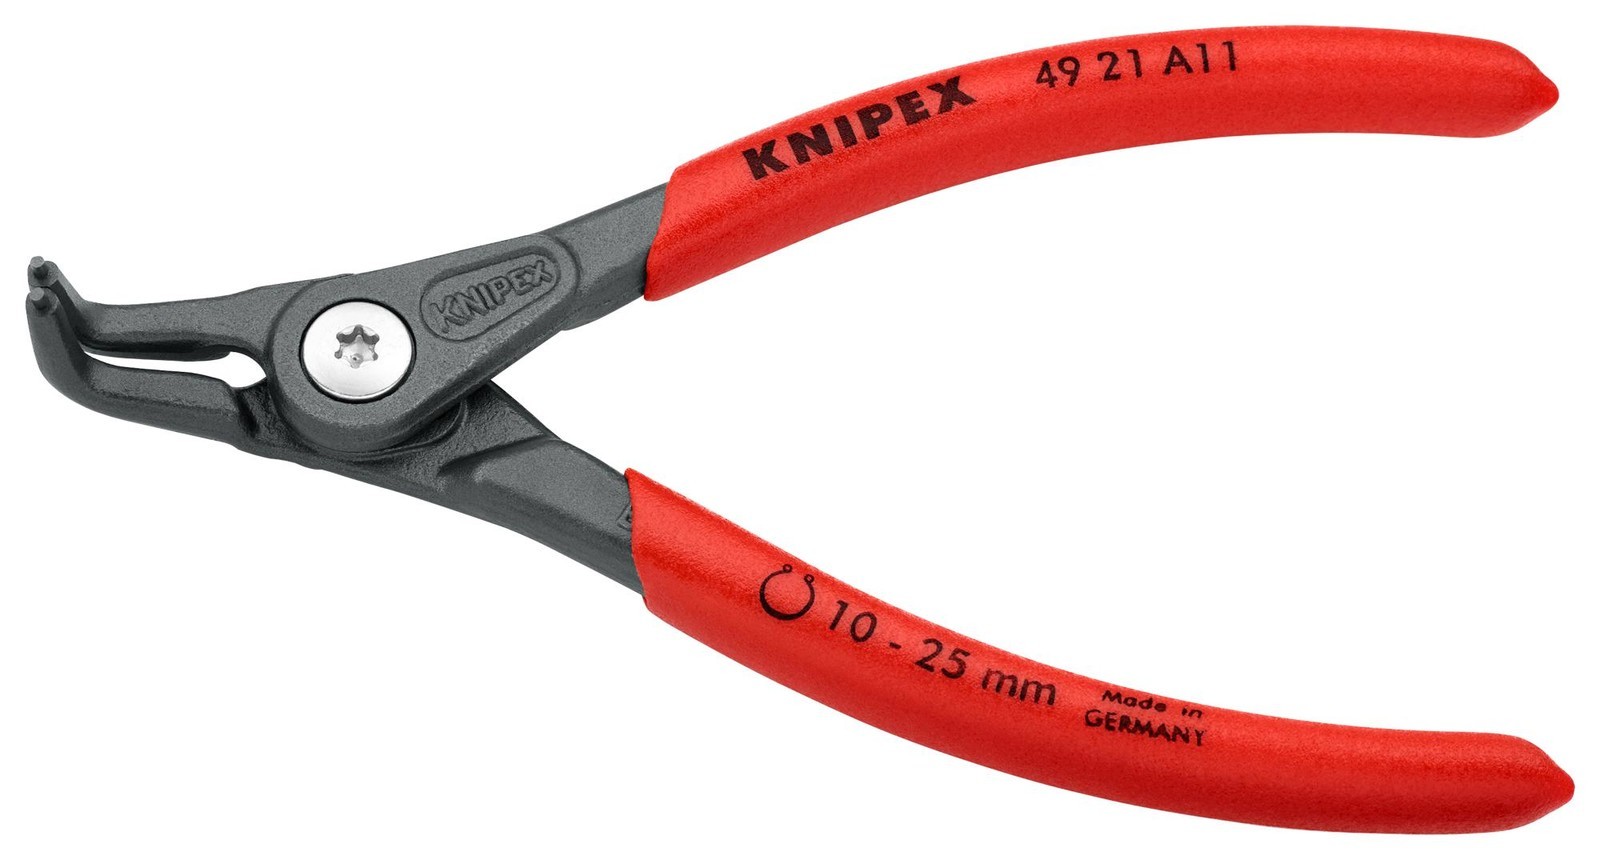 Knipex 49 21 A11 Circlip Plier, Ext, Bent